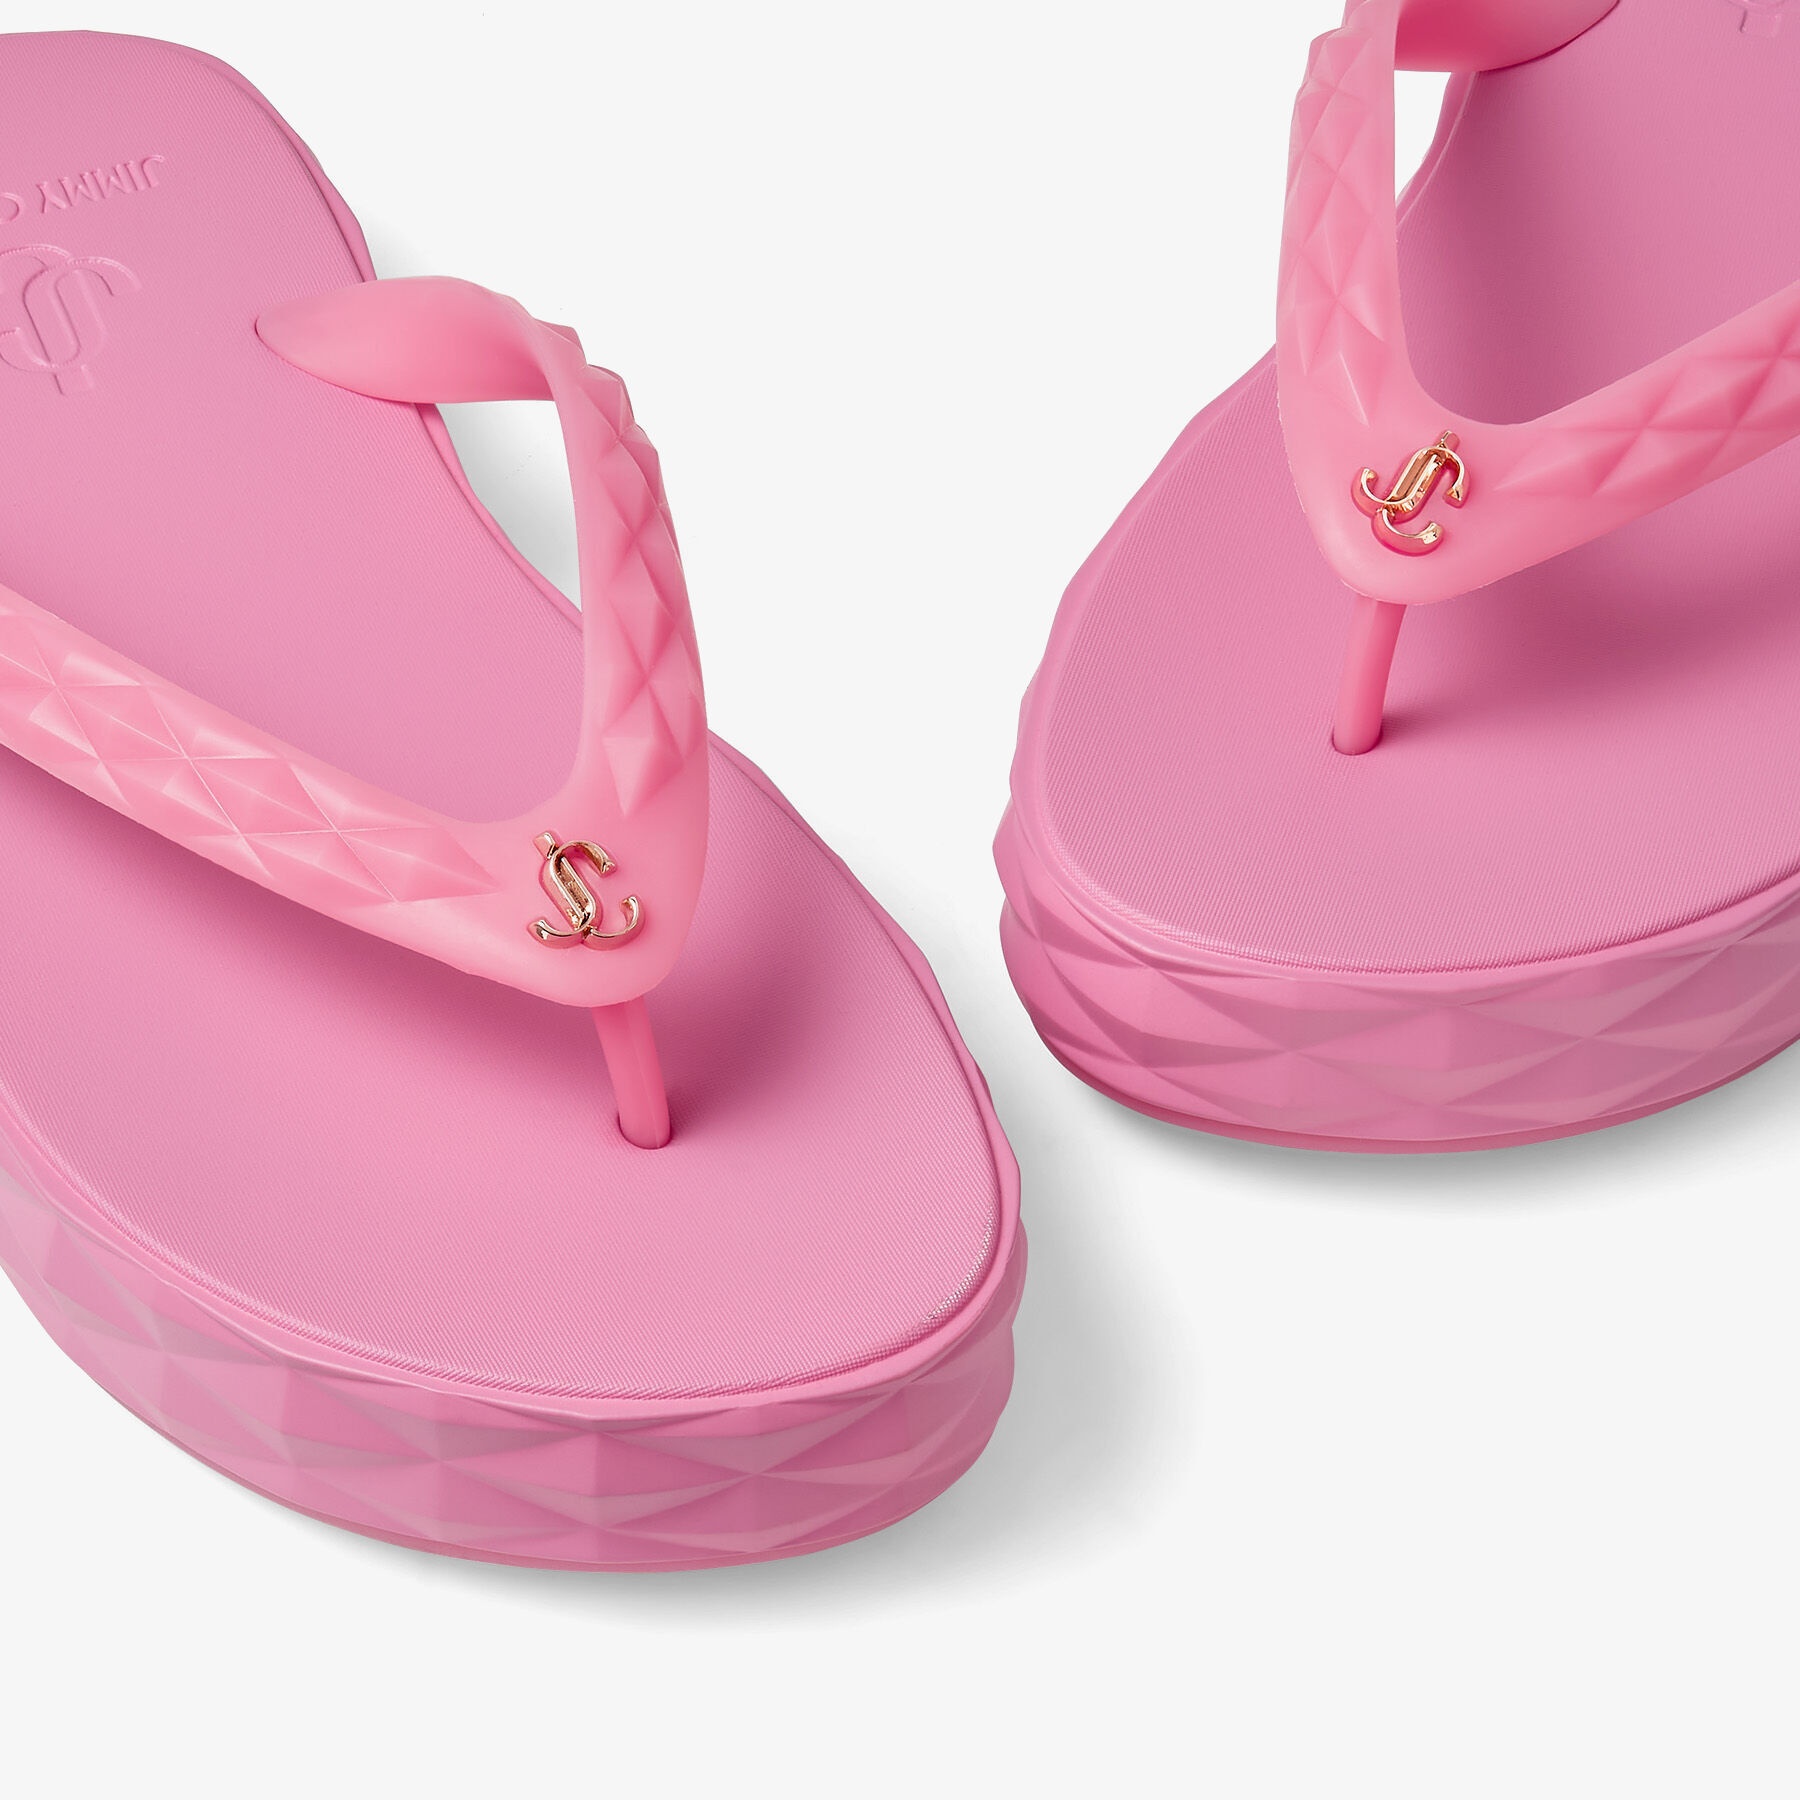 Diamond Flip Flop
Candy Pink Rubber Flip-Flops - 4